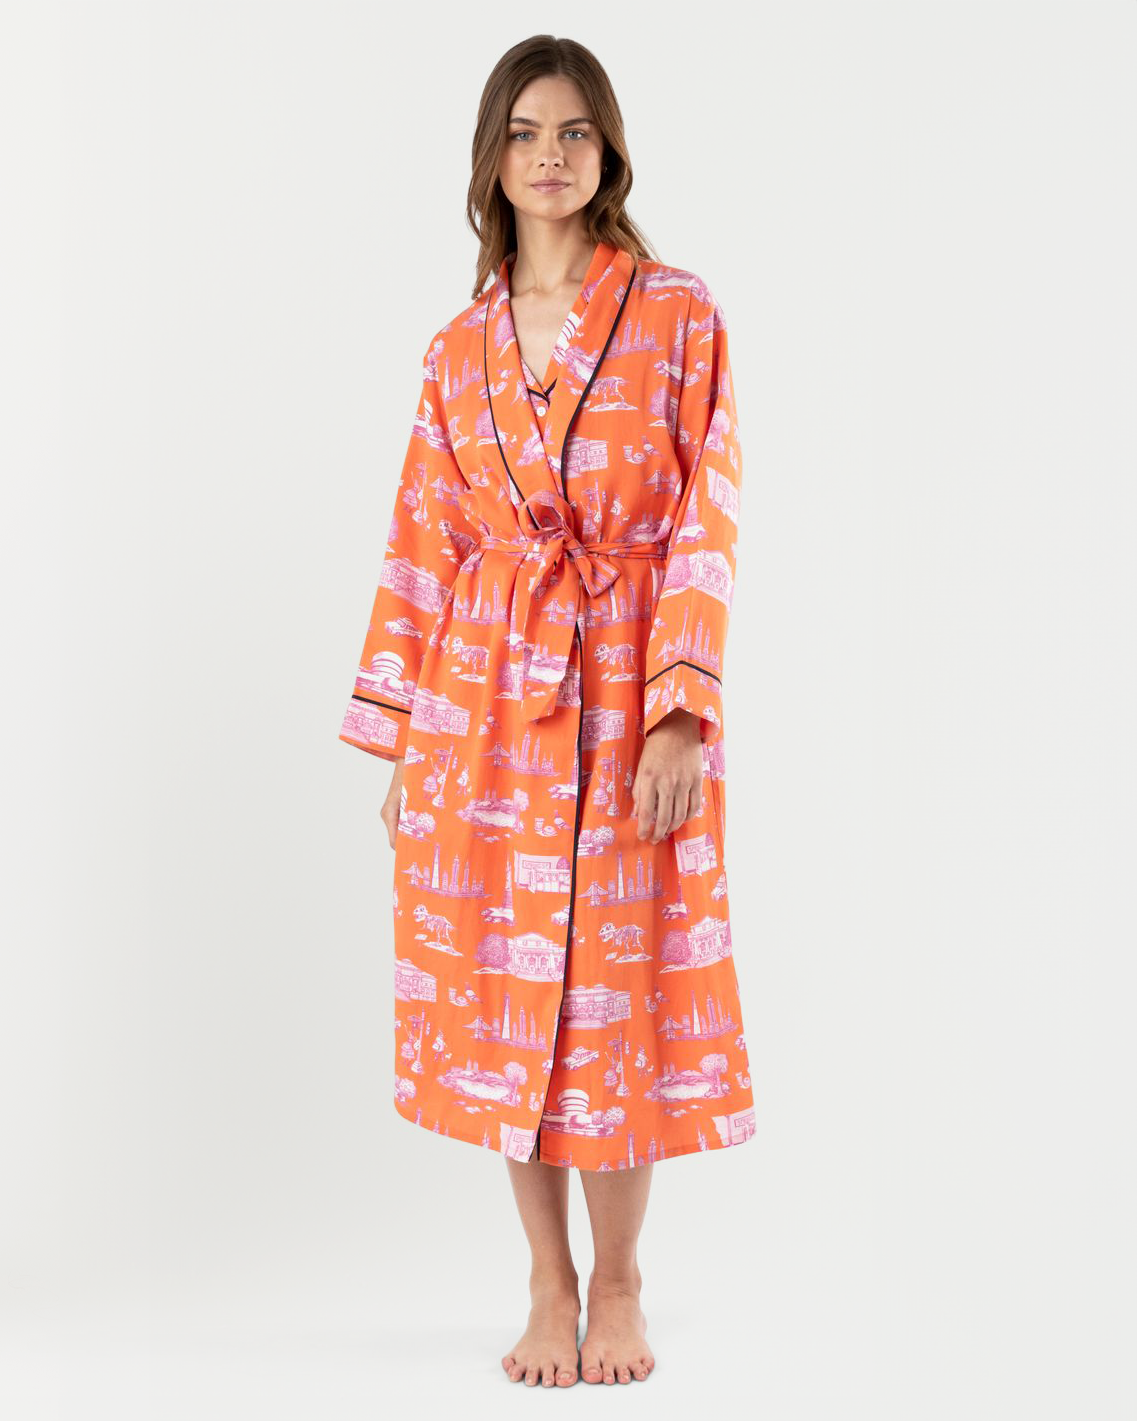 New York Toile Robe Robe Orange / S/M Katie Kime